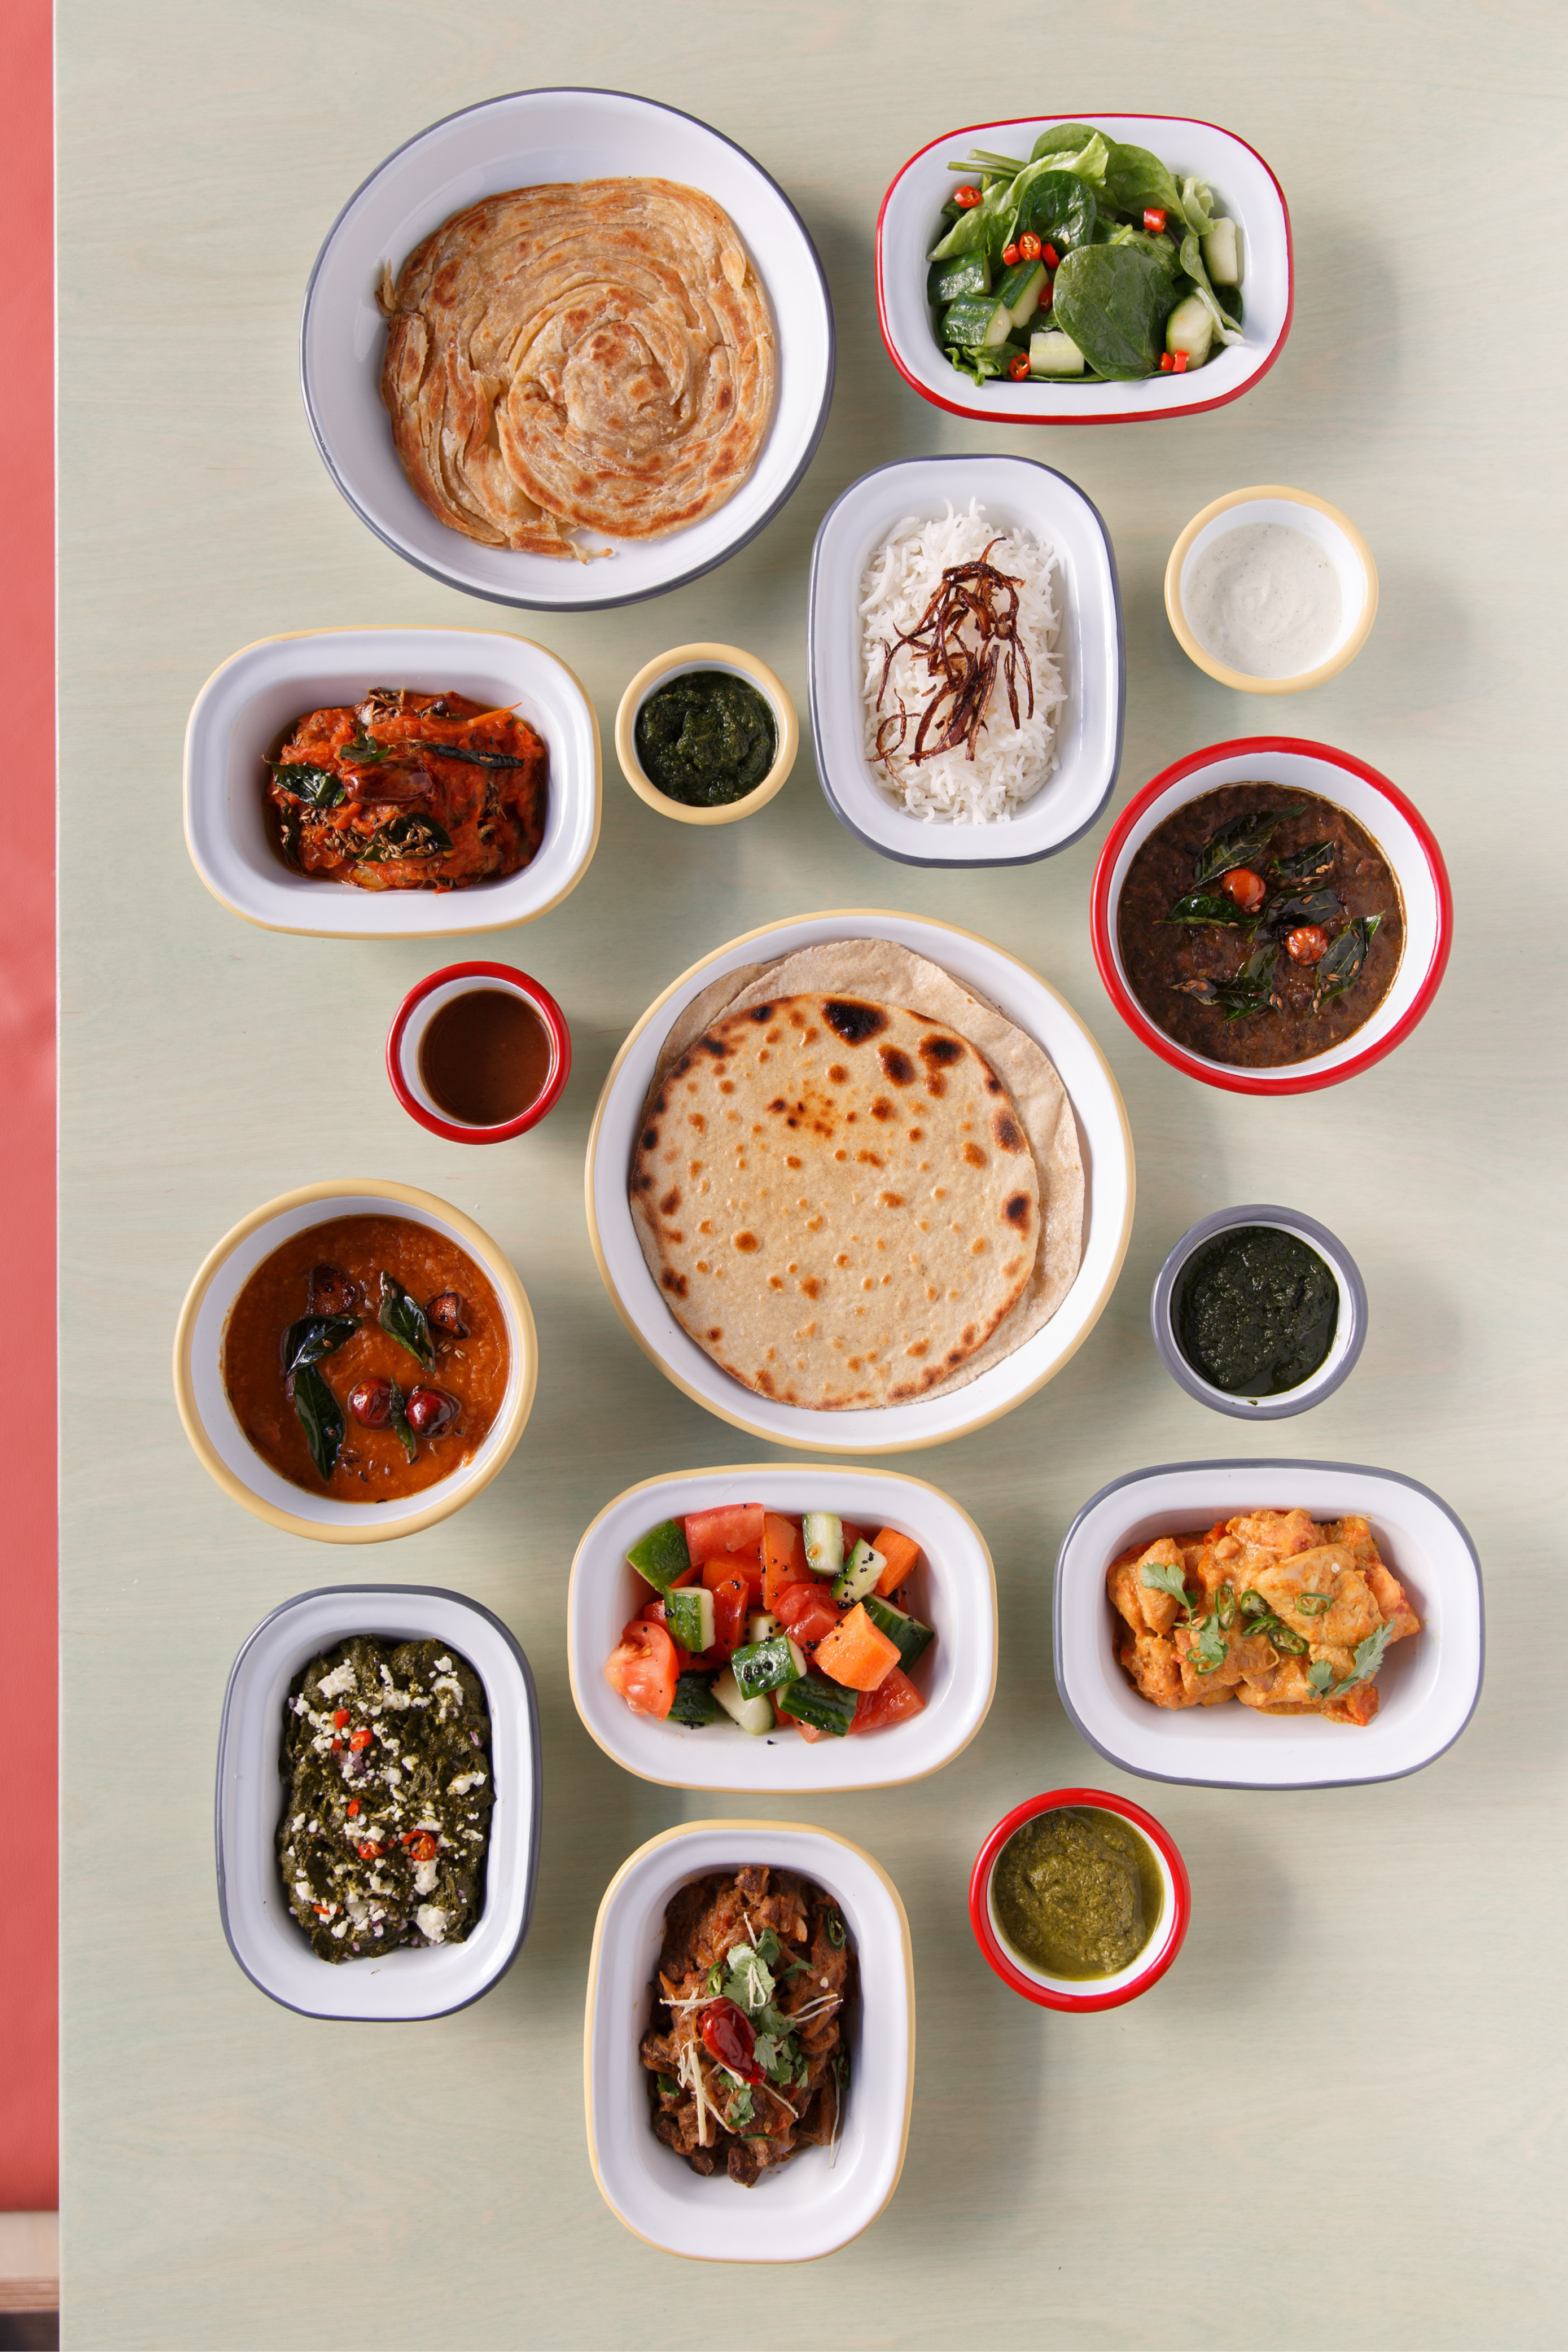 A selection of dishes at Shola Karachi Kitchen